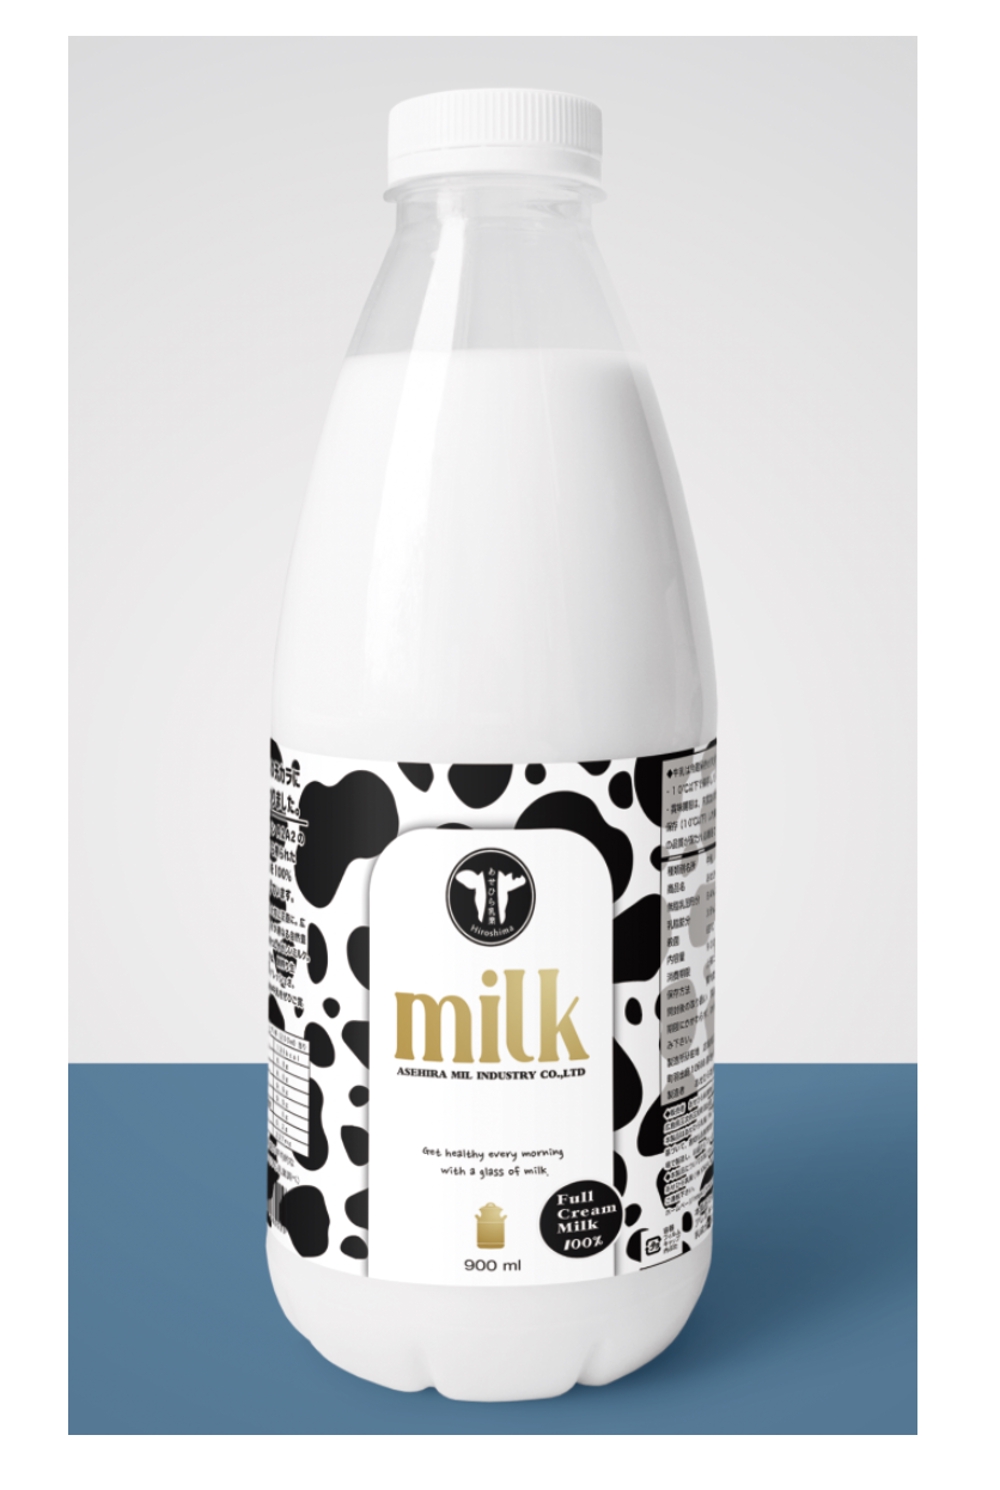 乳業メーカーの新作牛乳販売の為のパッケージデザイン